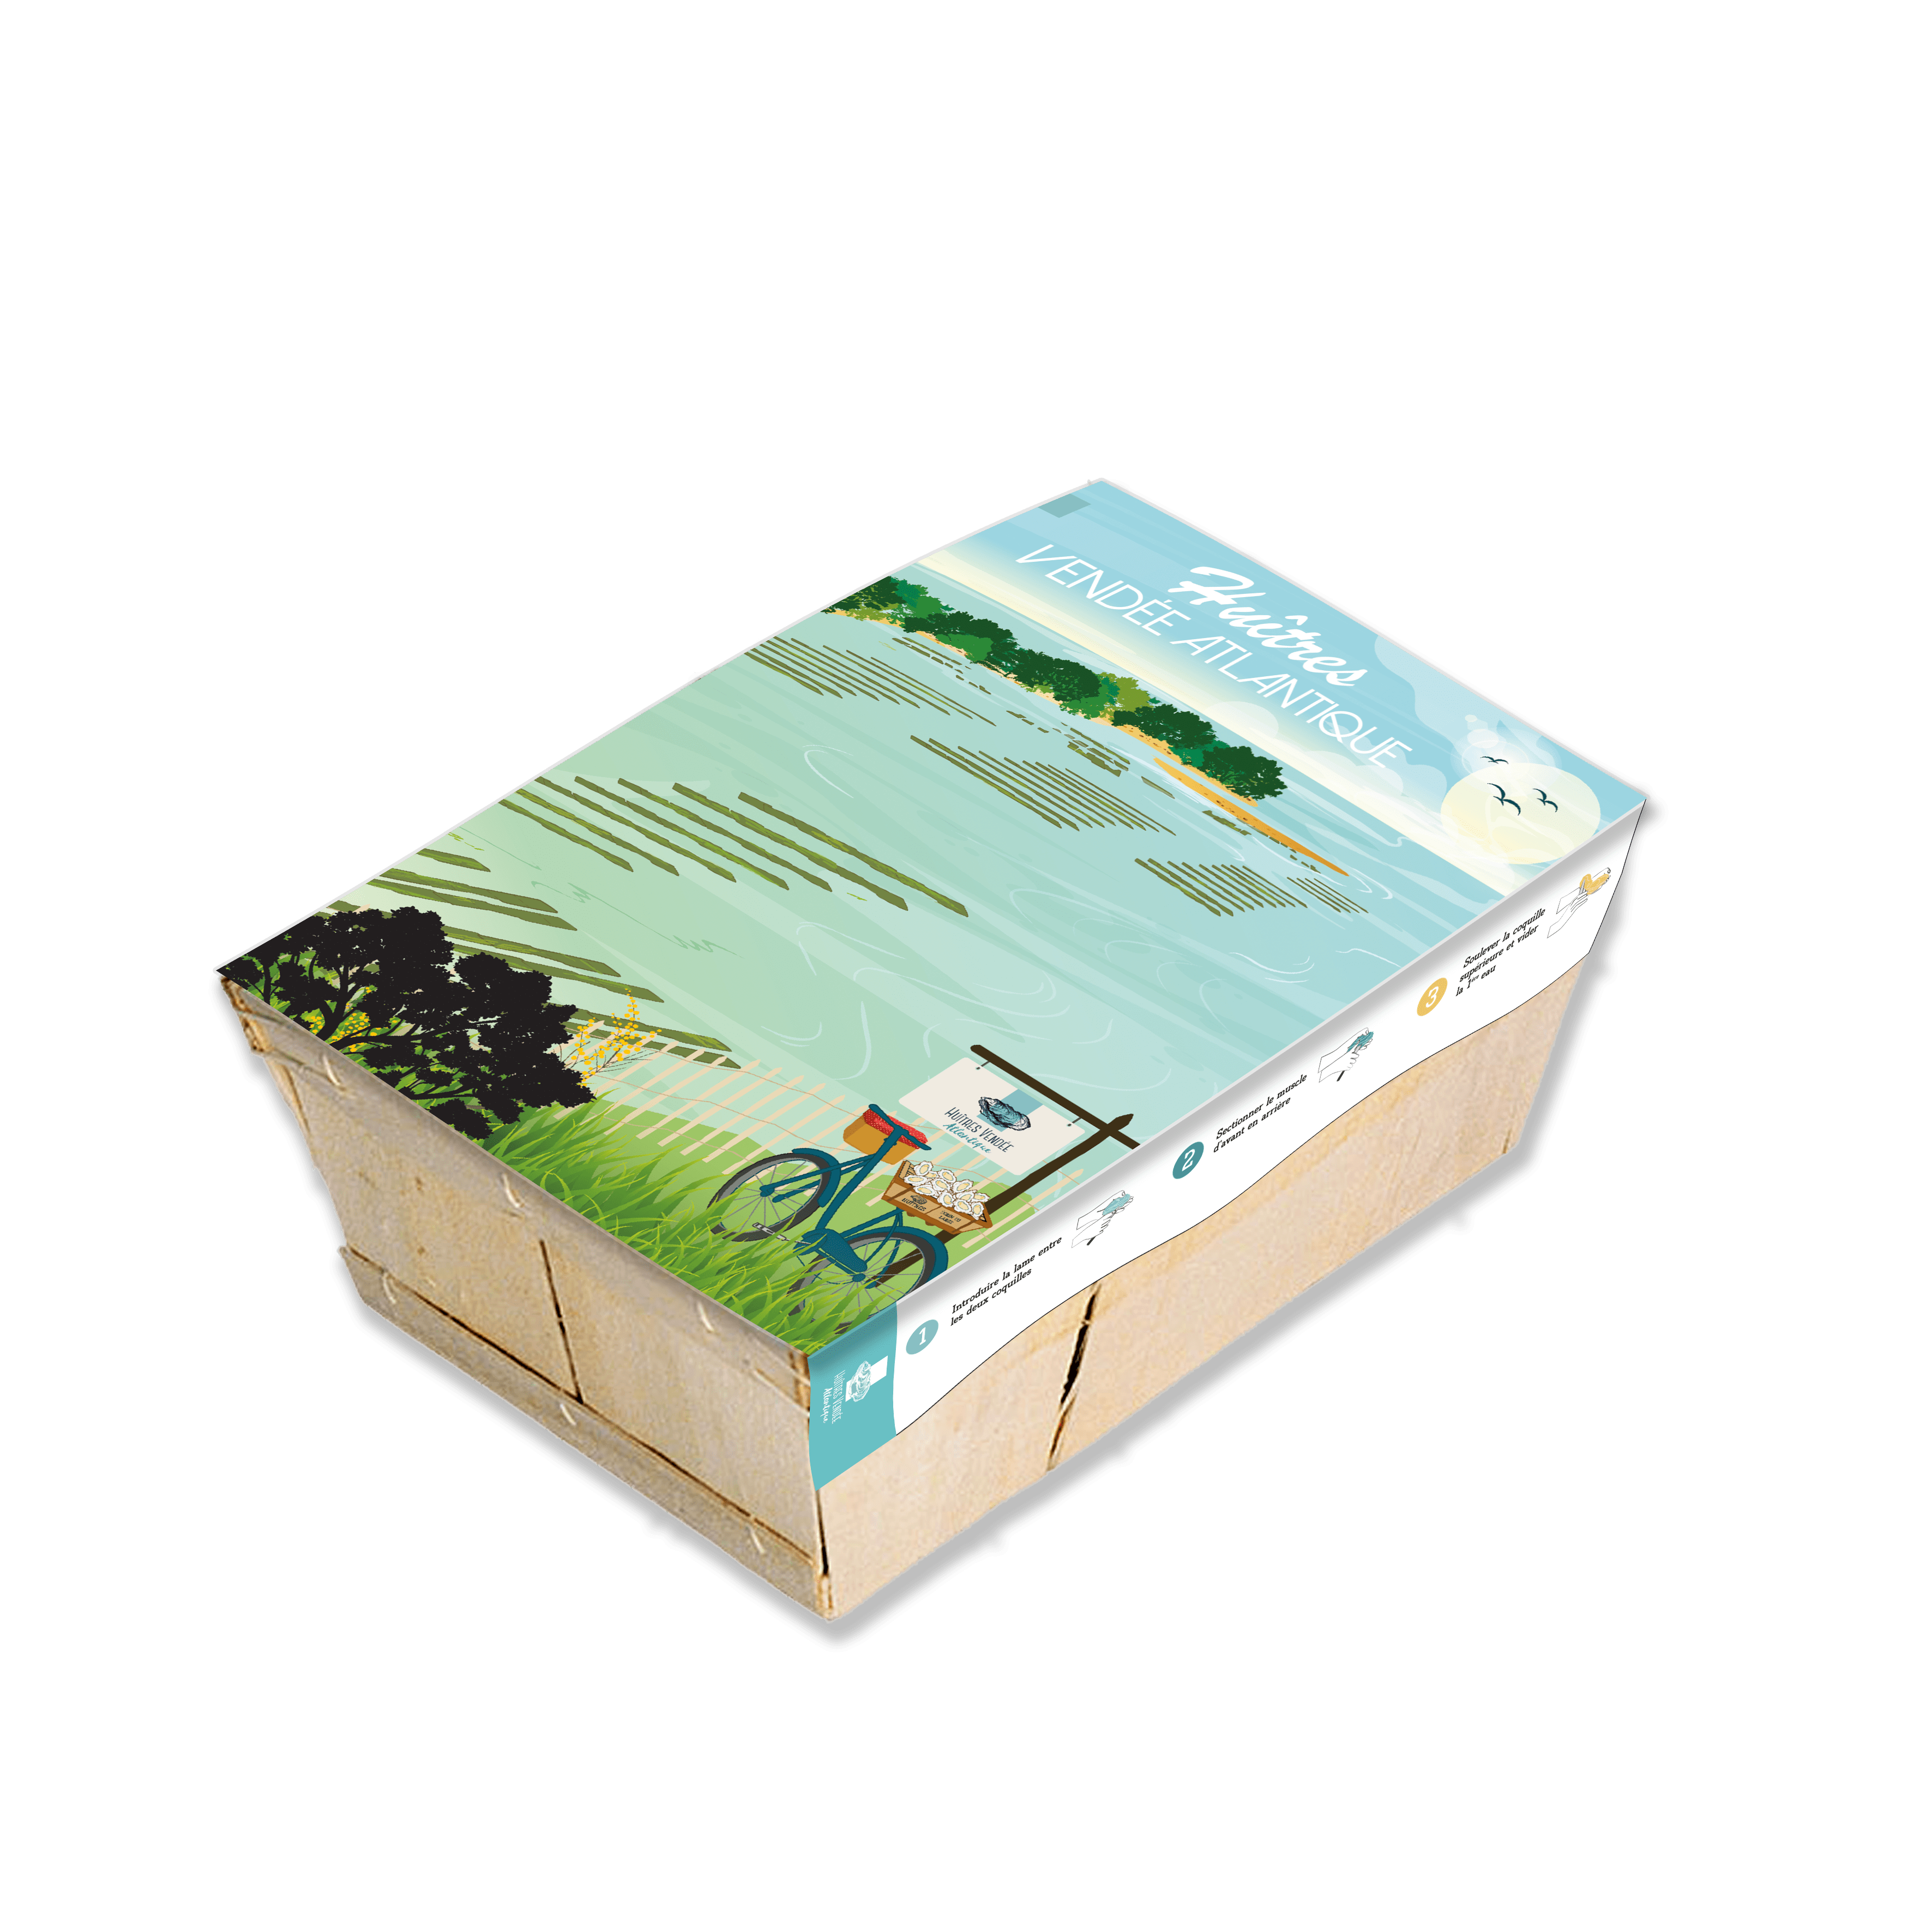 Impression bourriche d'huitre territoriale Vendée Atlantique - Par imprimerie du large